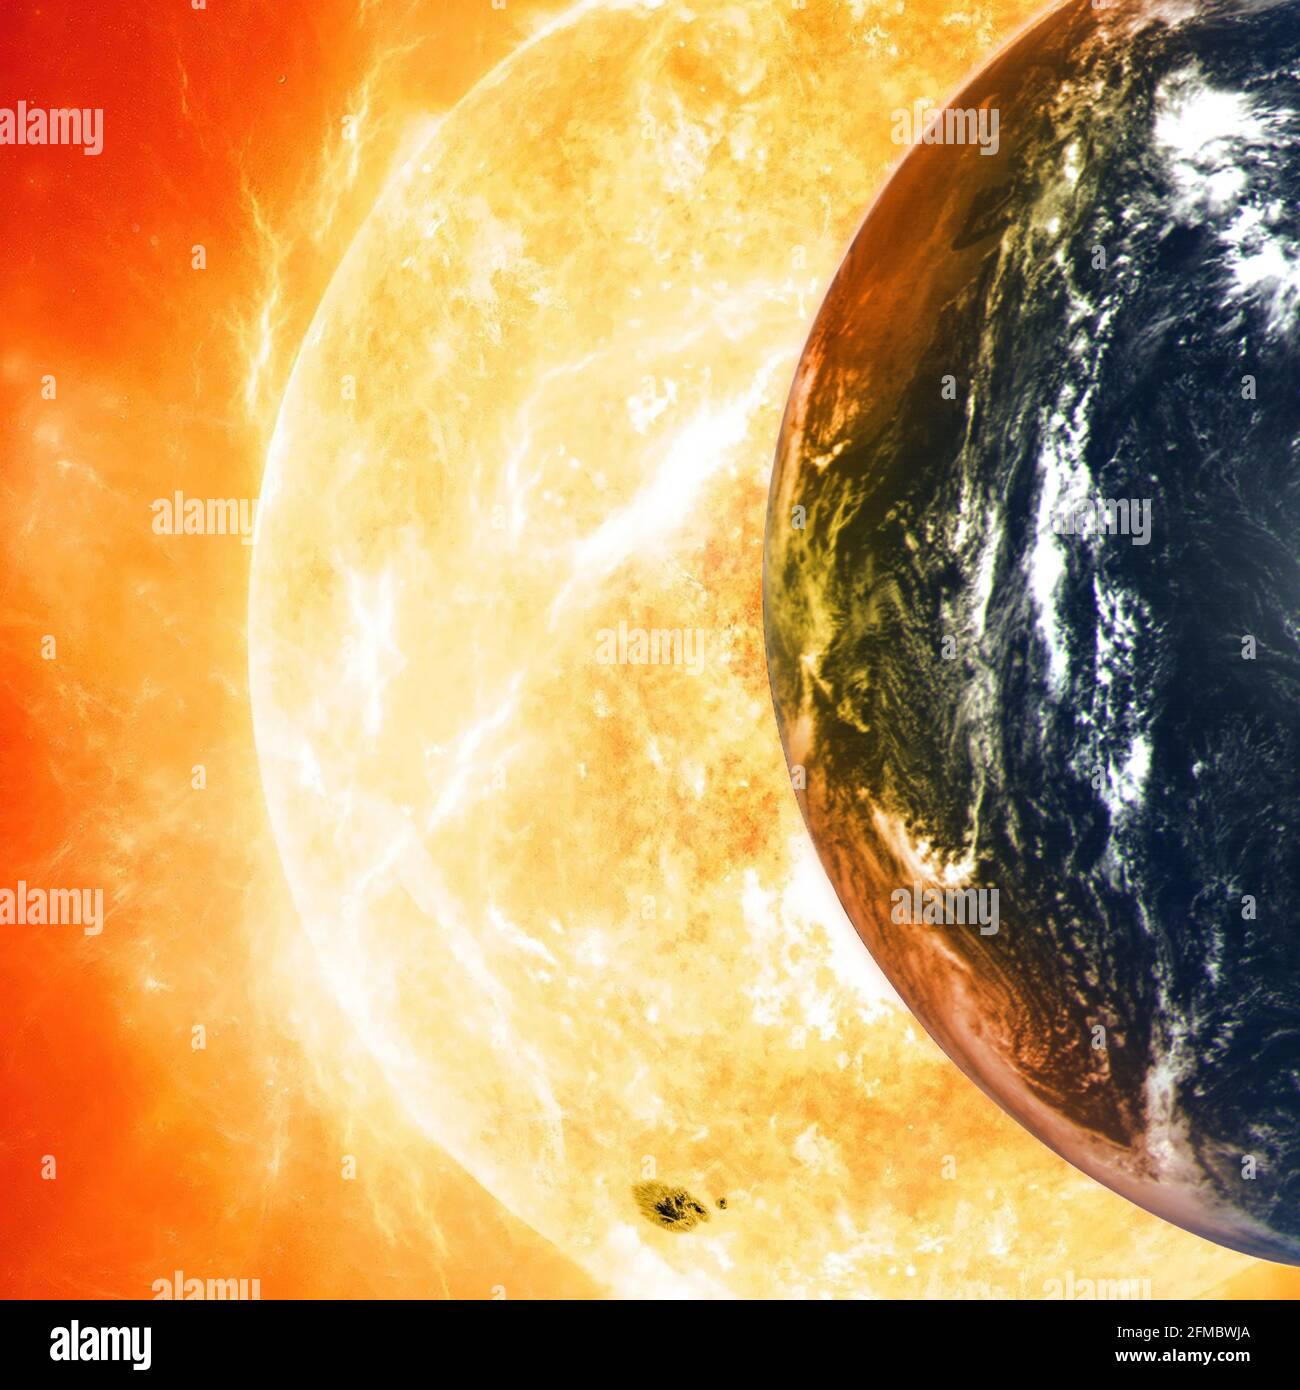 Planet Erde vor dem Hintergrund einer riesigen Sonne. Elemente dieses Bildes, die von der NASA eingerichtet wurden. Stockfoto